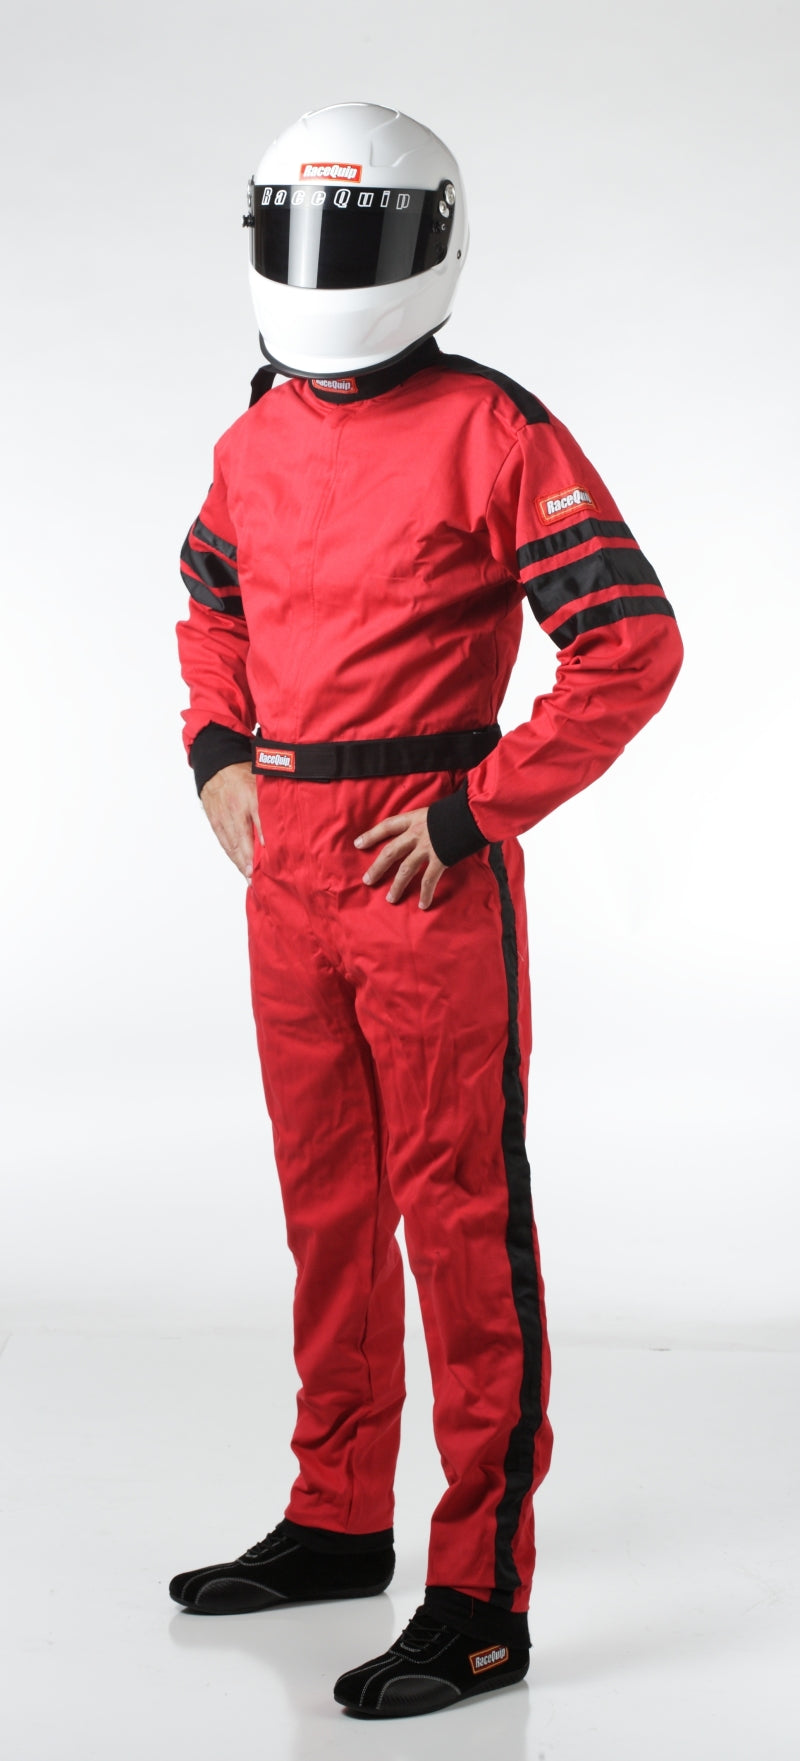 RaceQuip Red SFI-1 1-L Suit - Large